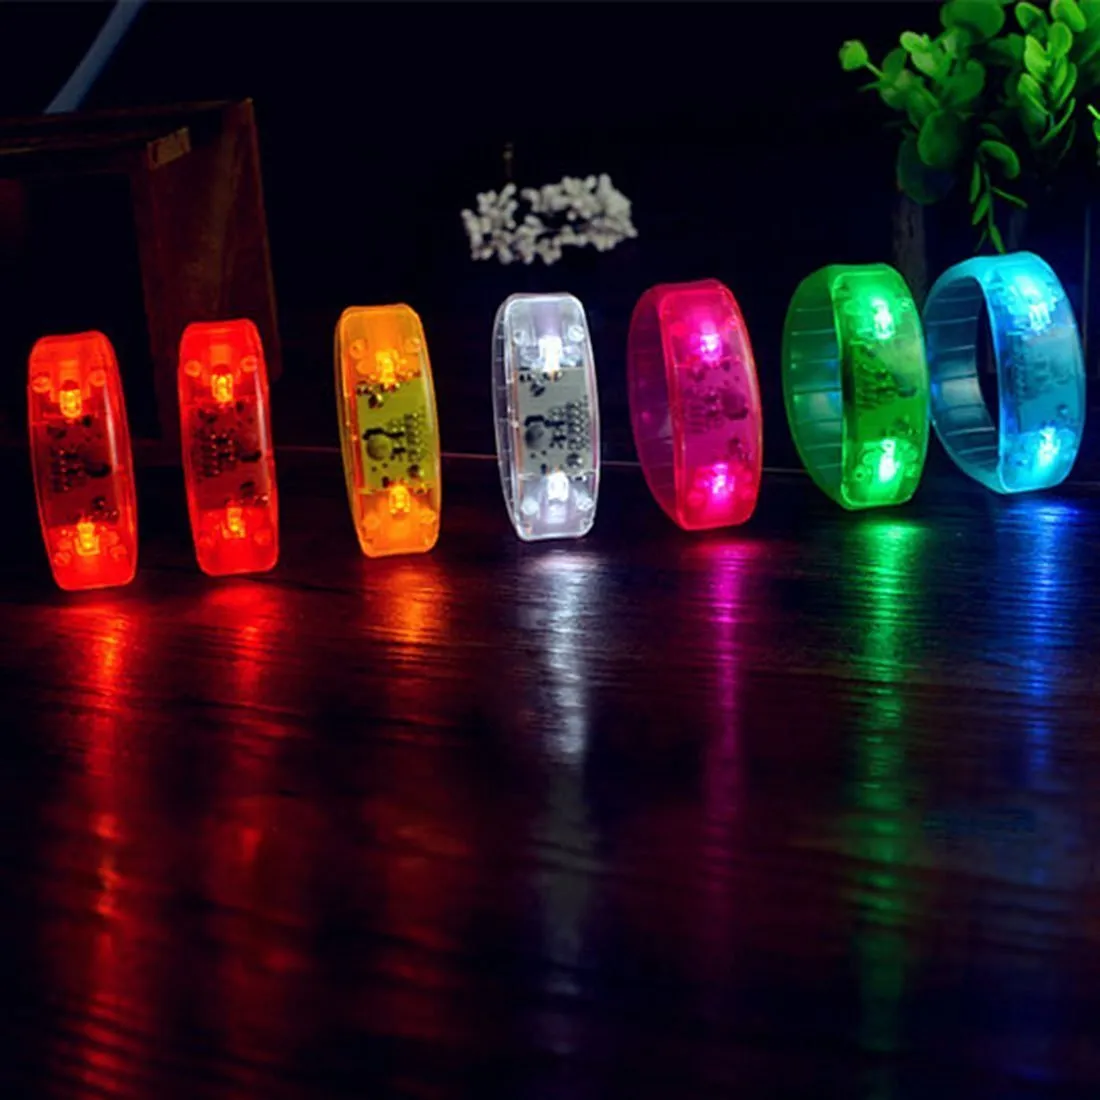 참신 조명 음악 활성화 된 사운드 컨트롤 LED 팔찌 라이트 업 팔찌 클럽 파티 바 치어 Luminous Hand Ring Glow Stick Night Lights